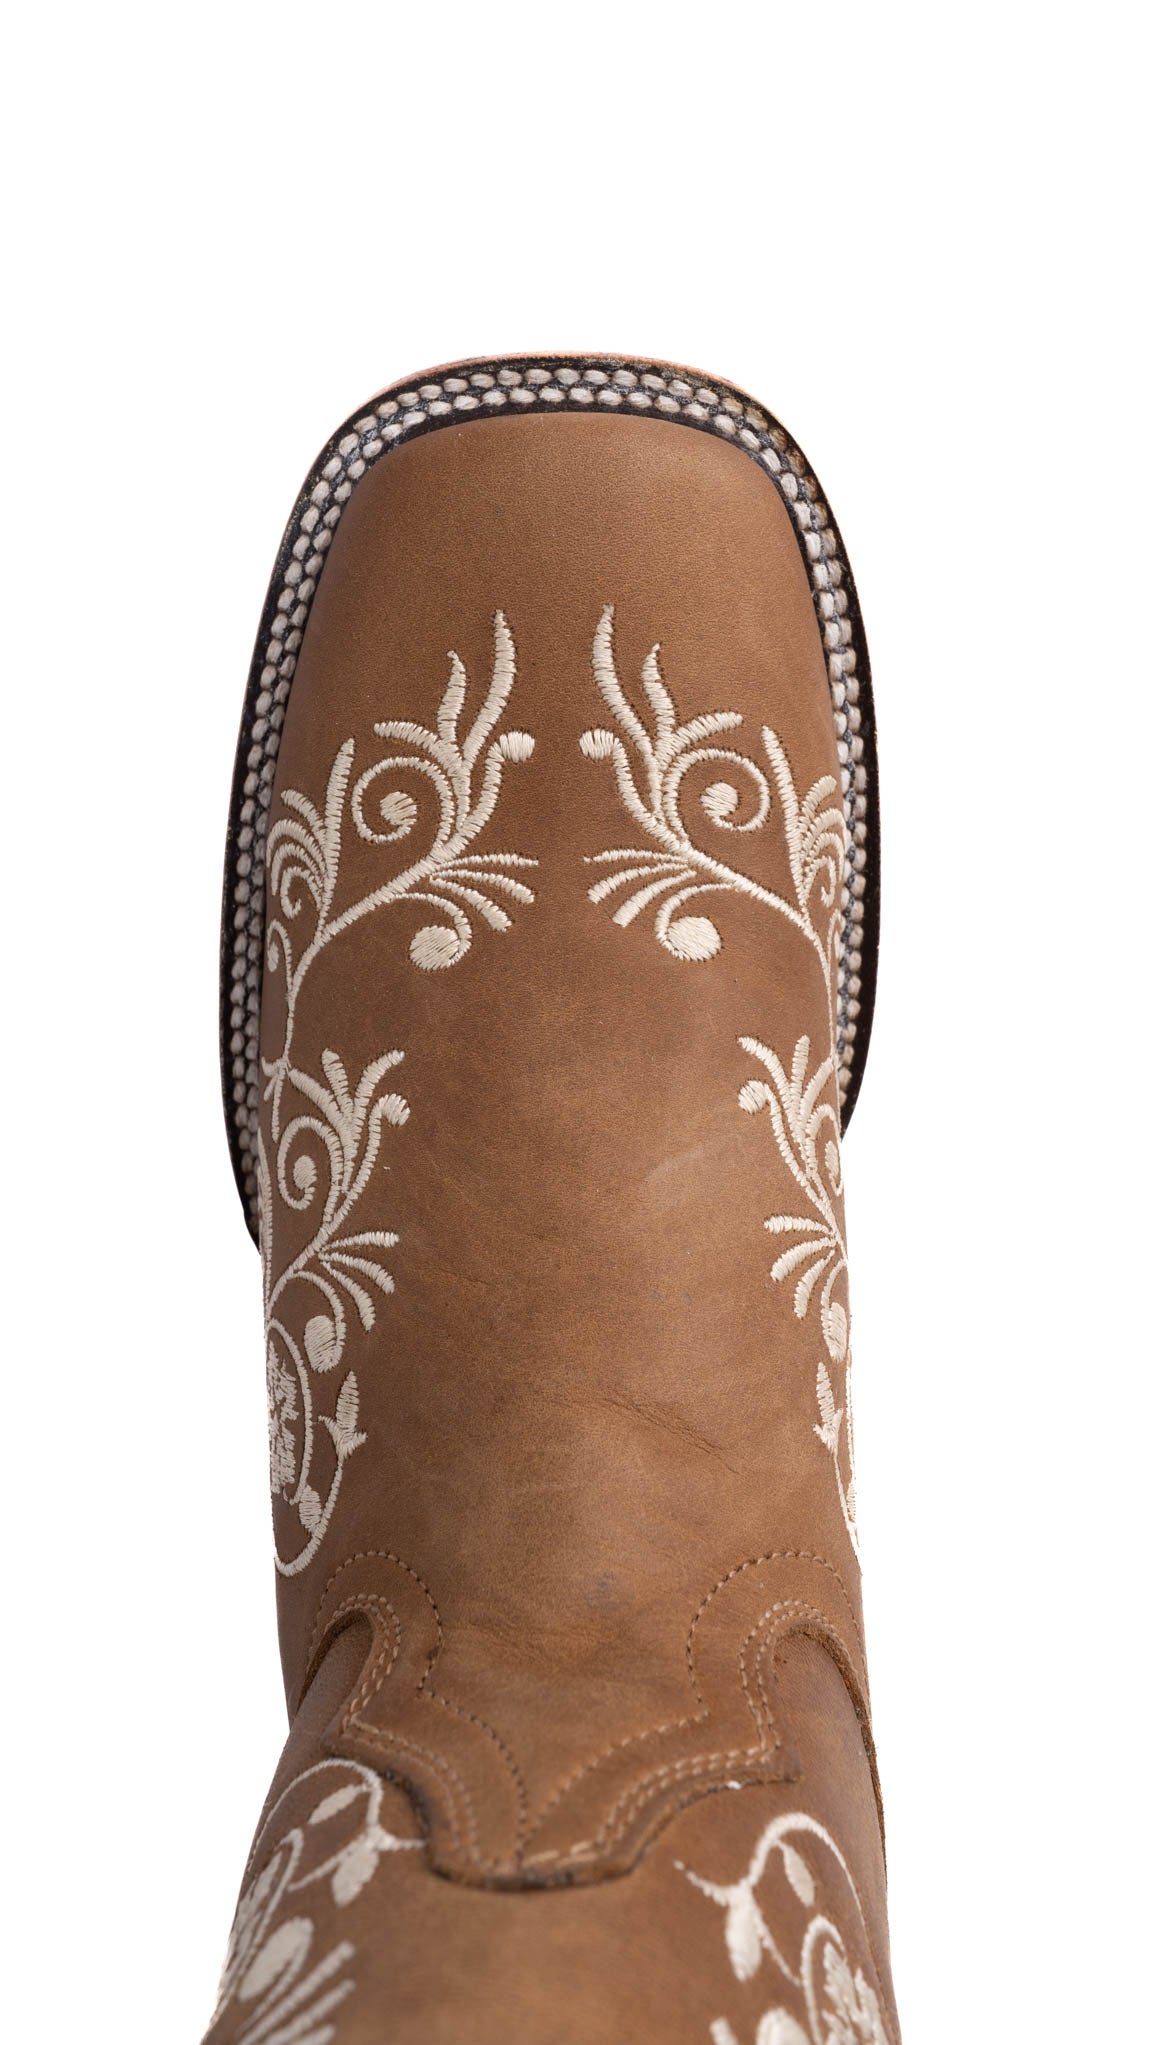 Verano Tabaco Square Toe Cowgirl Boot